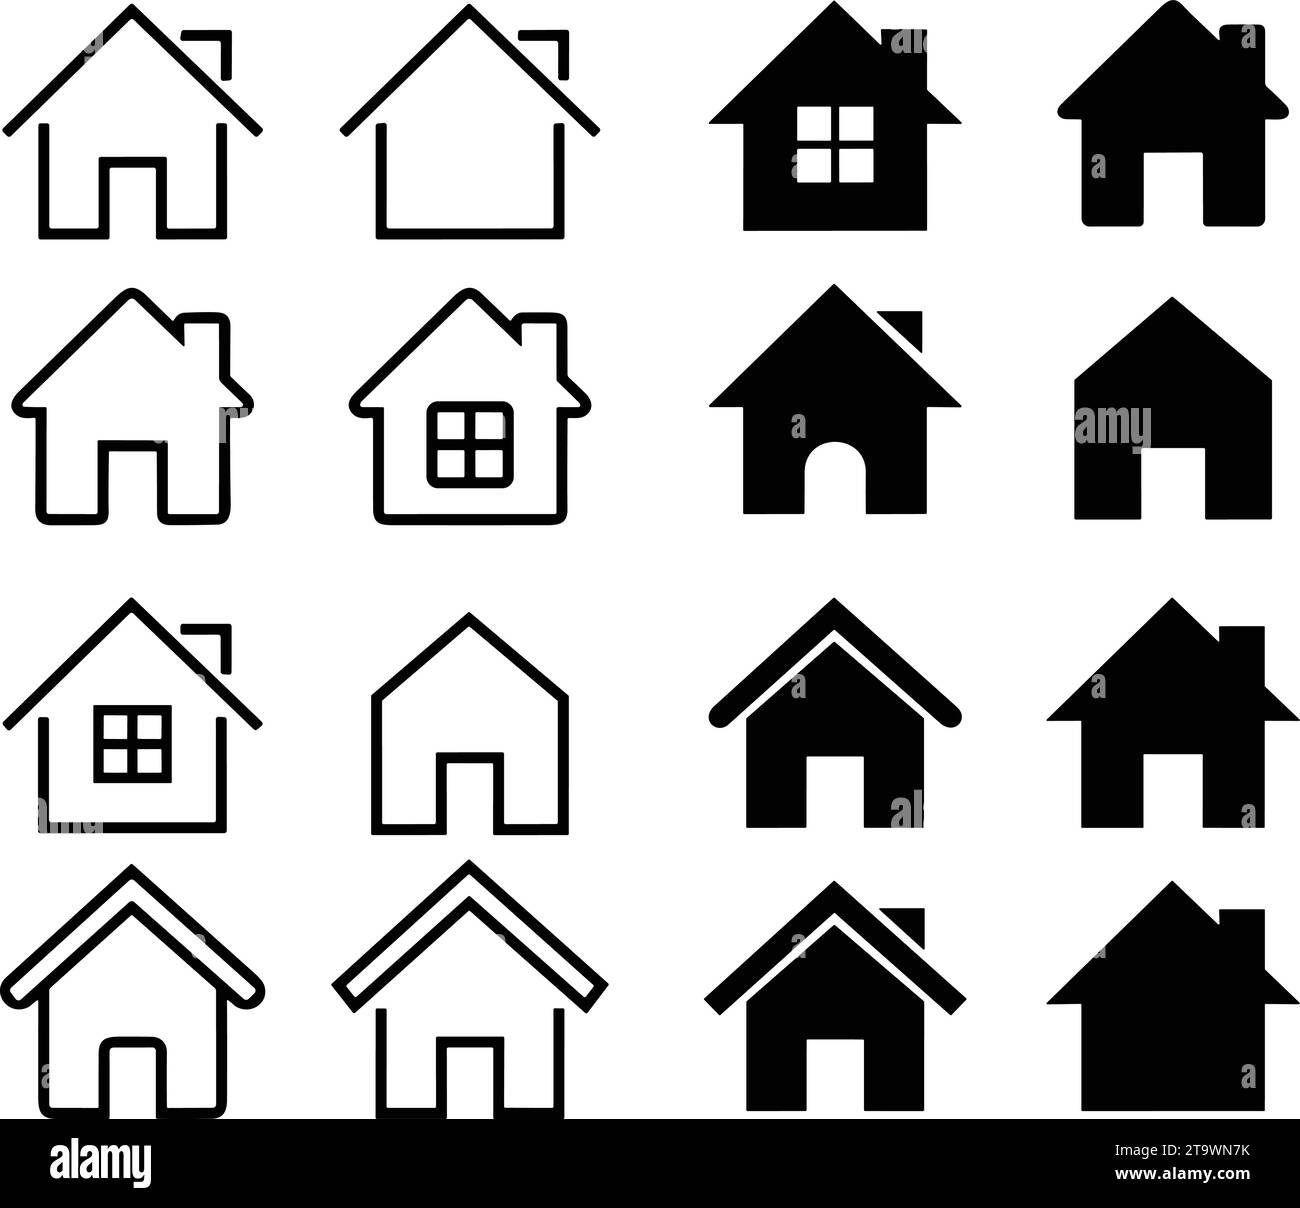 Symbole maison ou maison. HomePage ensemble d'objets immobiliers et maisons icônes noires. Collectez les icônes de la maison dans le style plat et de ligne pour les applications et les sites Web Illustration de Vecteur